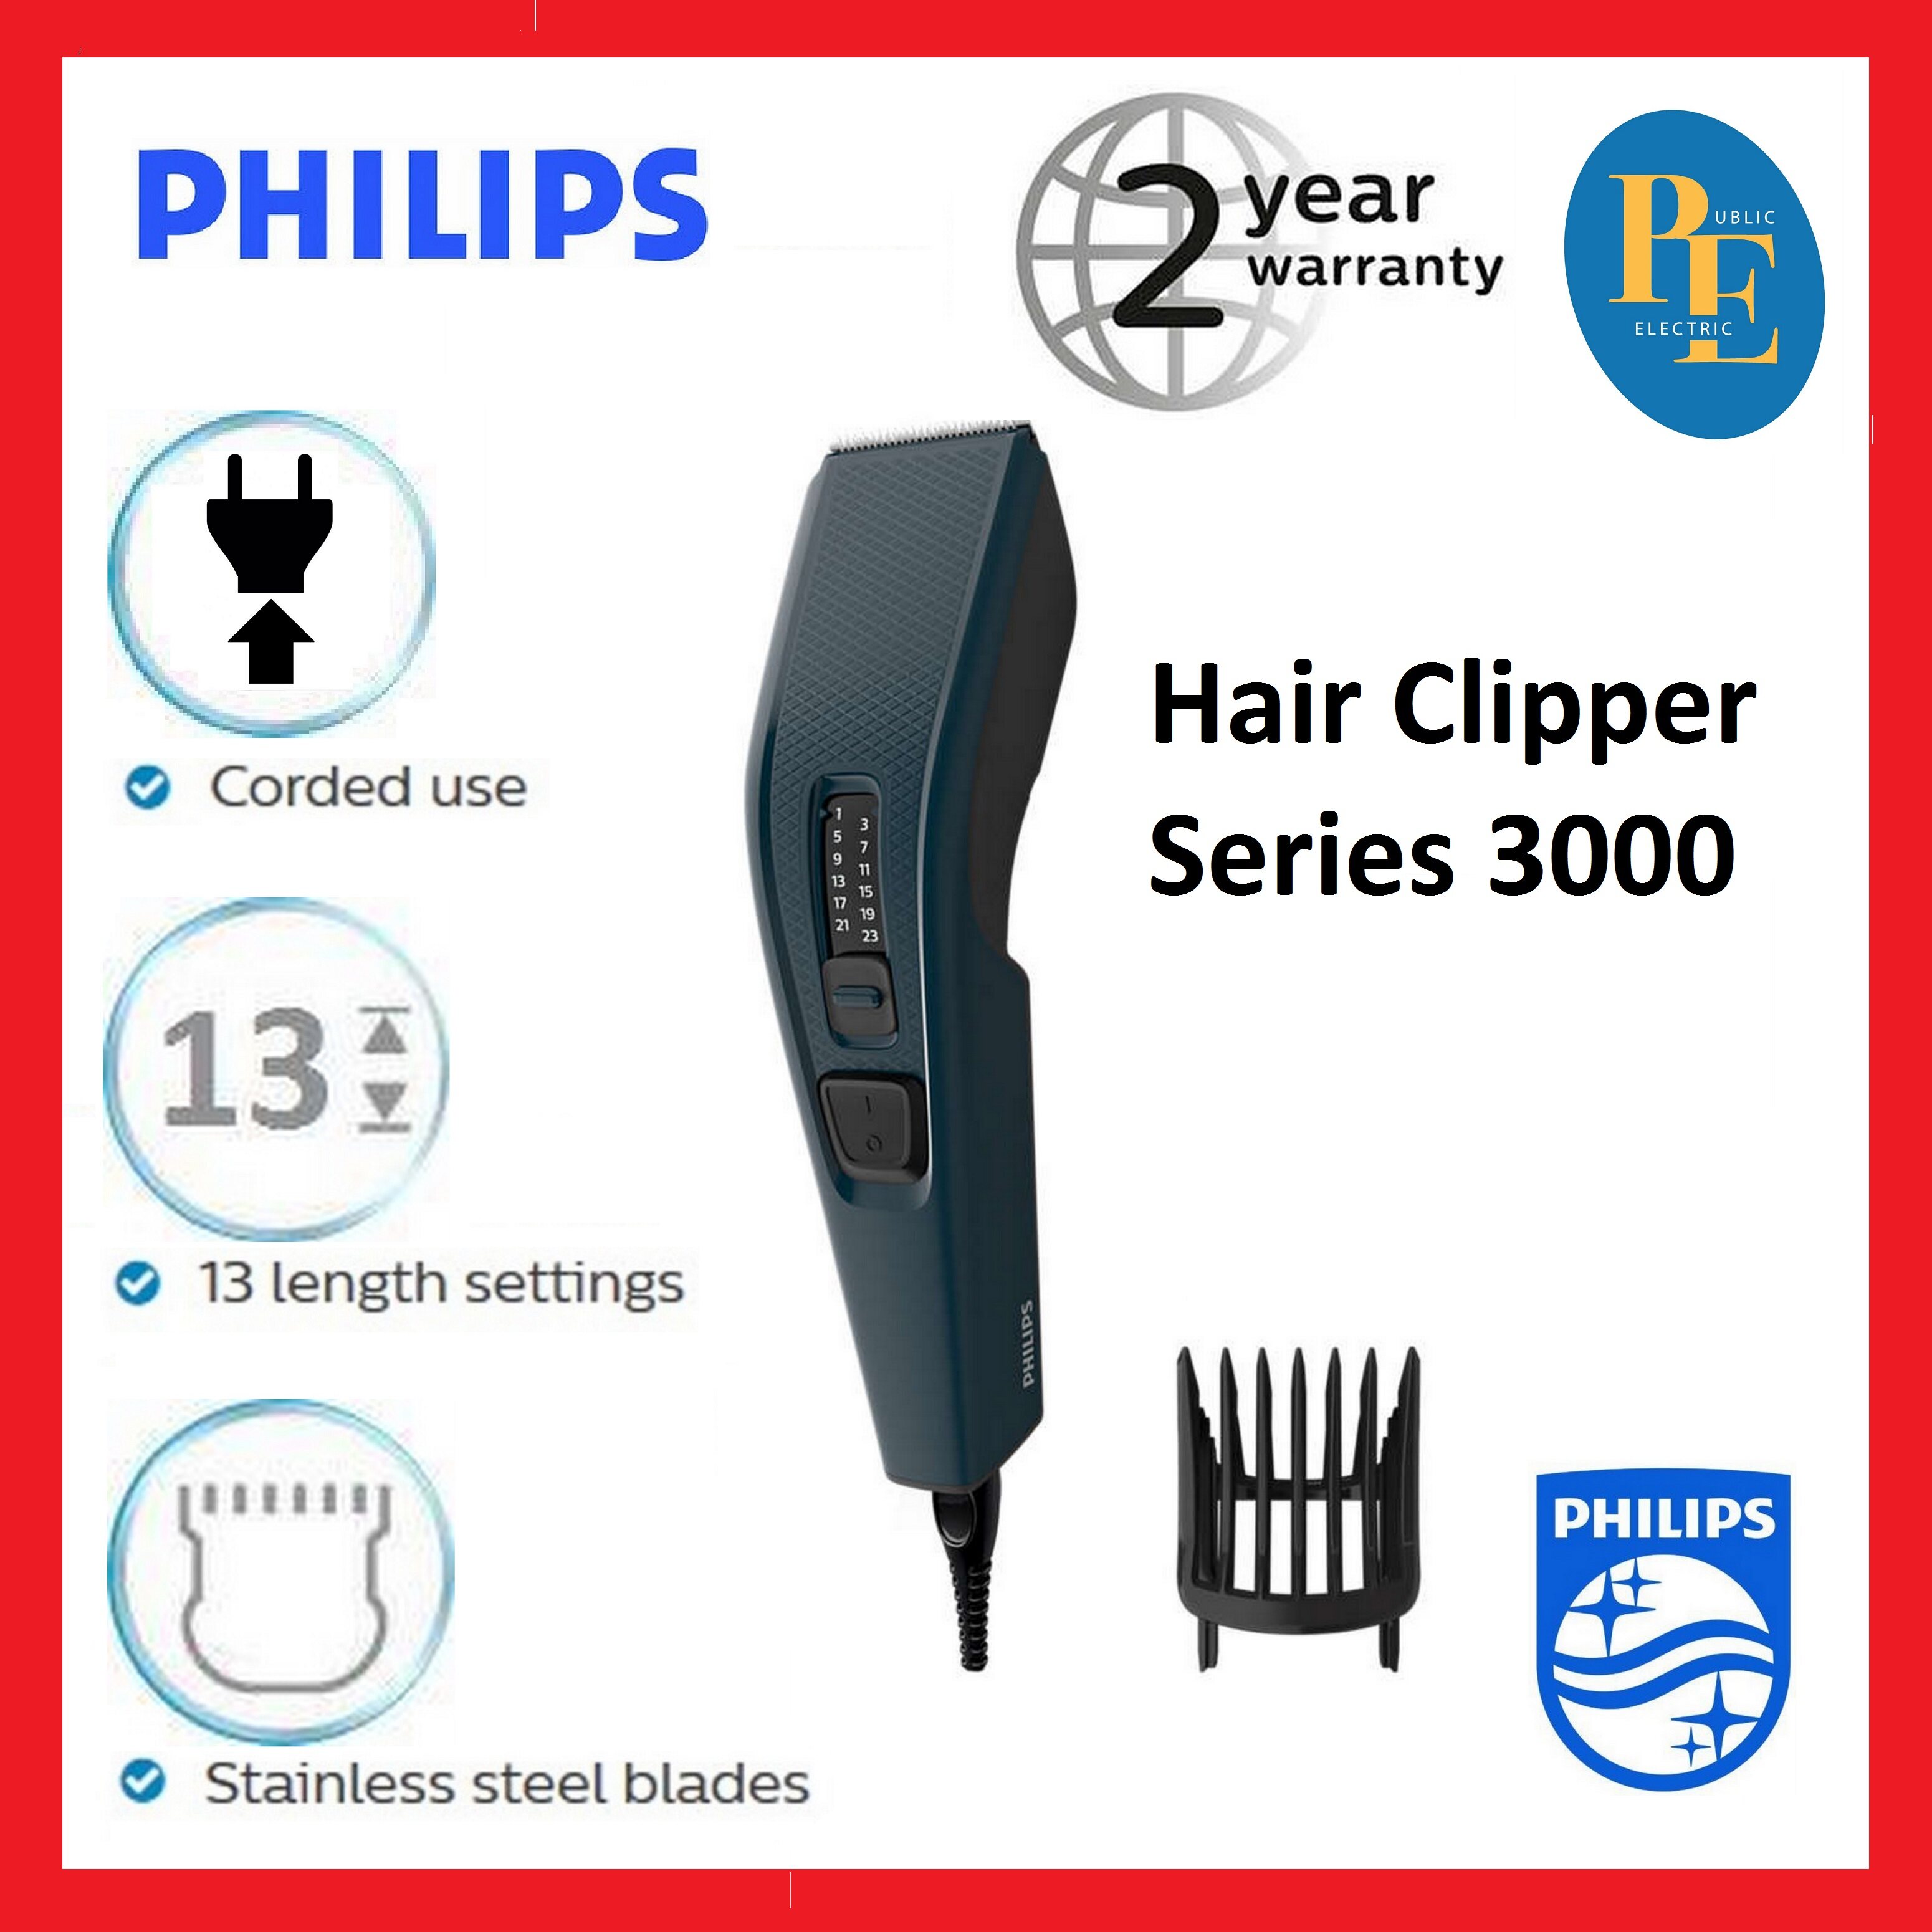 philips hair clipper hc3505